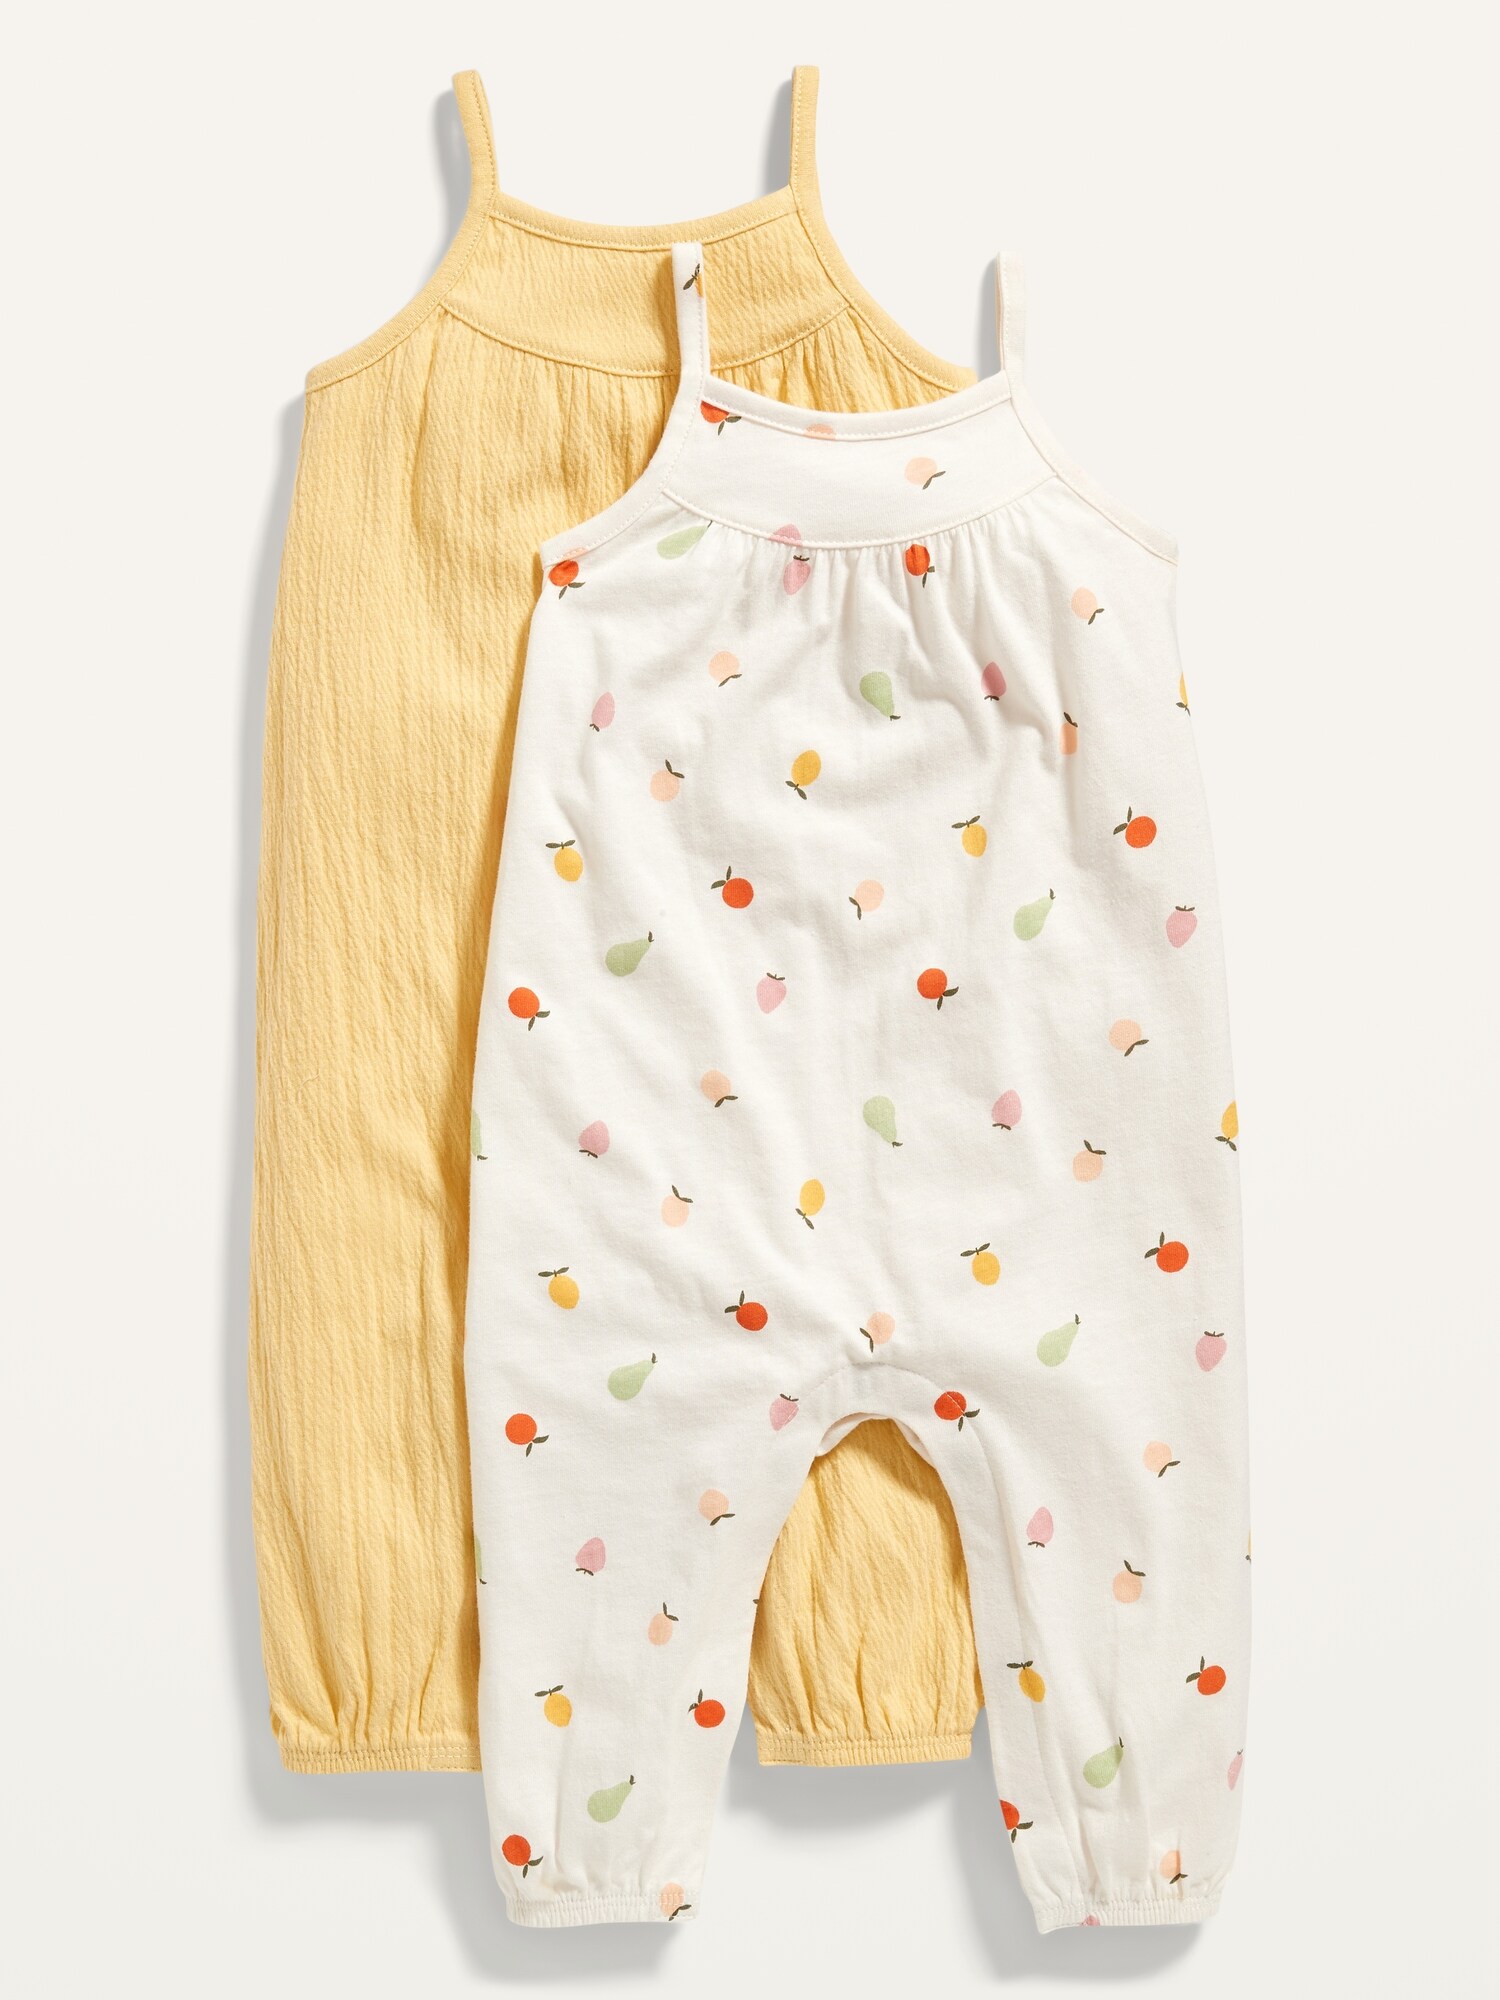 SugarBabies Boutique | Baby Clothes | Baby Gear | Baby Registry